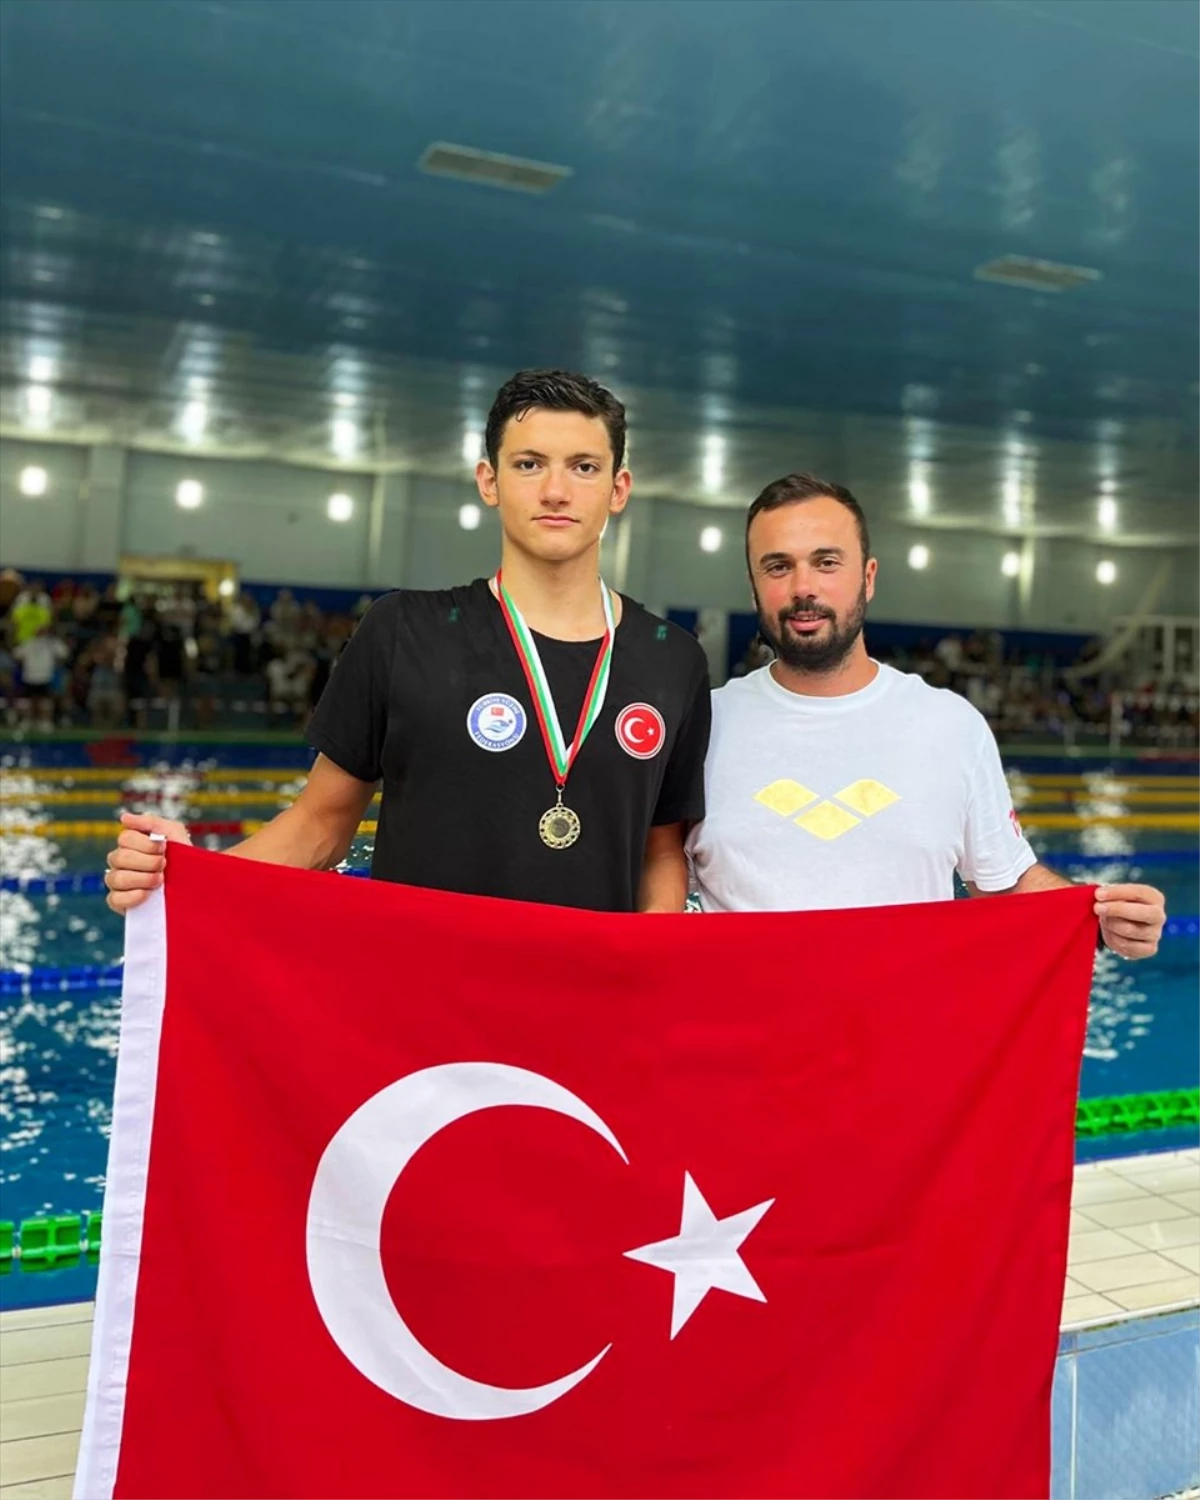 Antalyasporlu Yüzücü Emre Sarp Zeytinoğlu Altın ve Gümüş Madalya Kazandı